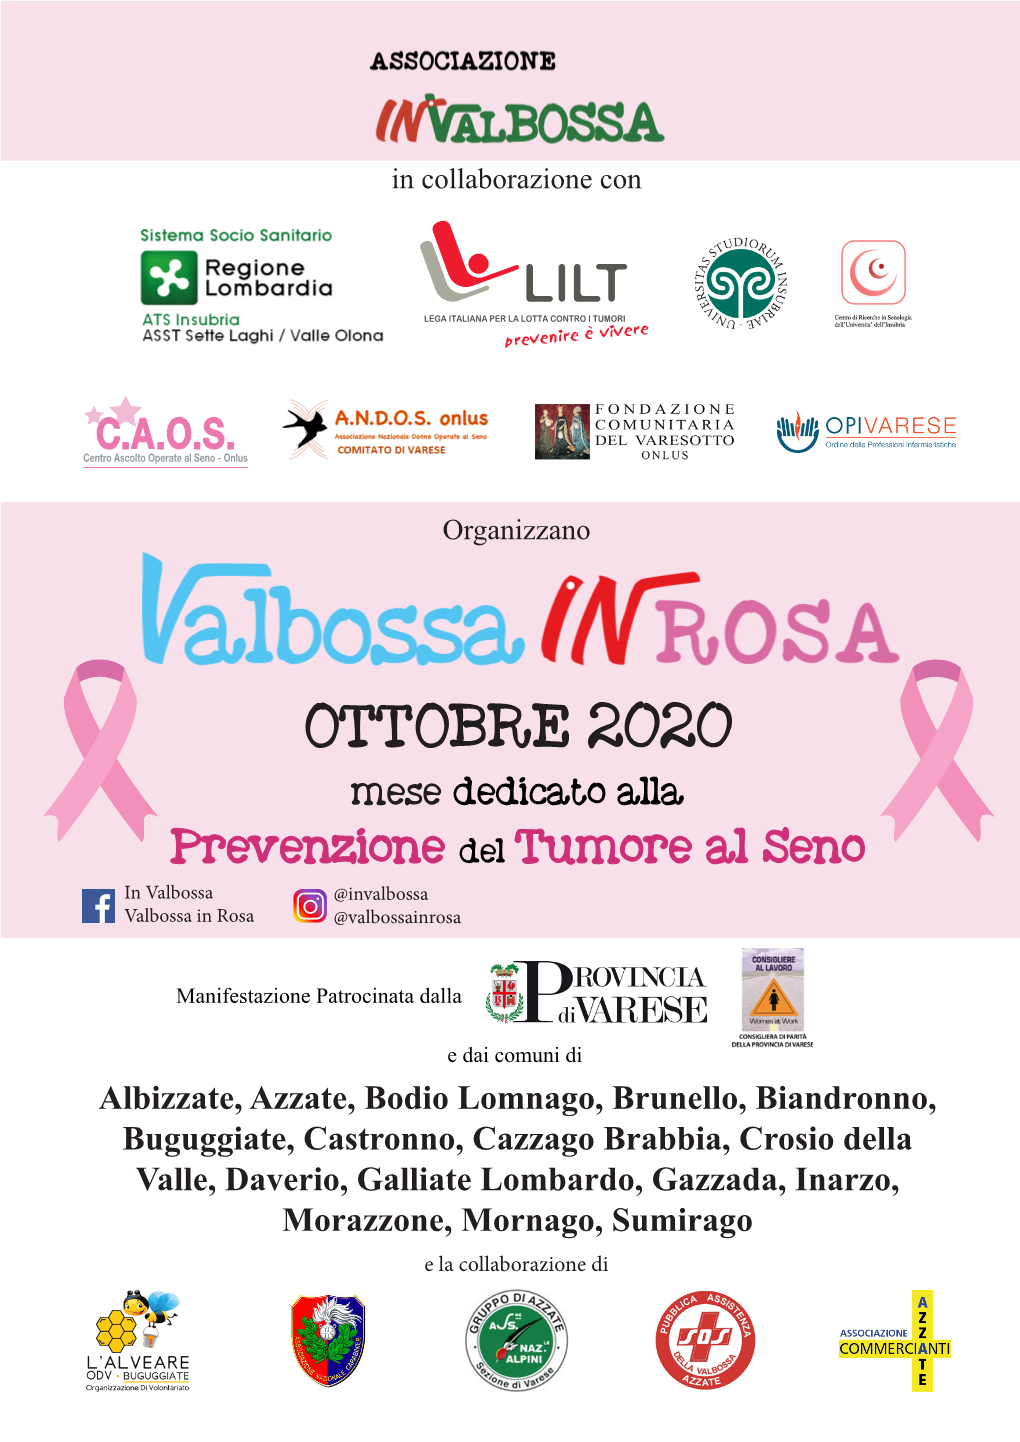 OTTOBRE 2020 Mese Dedicato Alla Prevenzione Del Tumore Al Seno in Valbossa @Invalbossa Valbossa in Rosa @Valbossainrosa